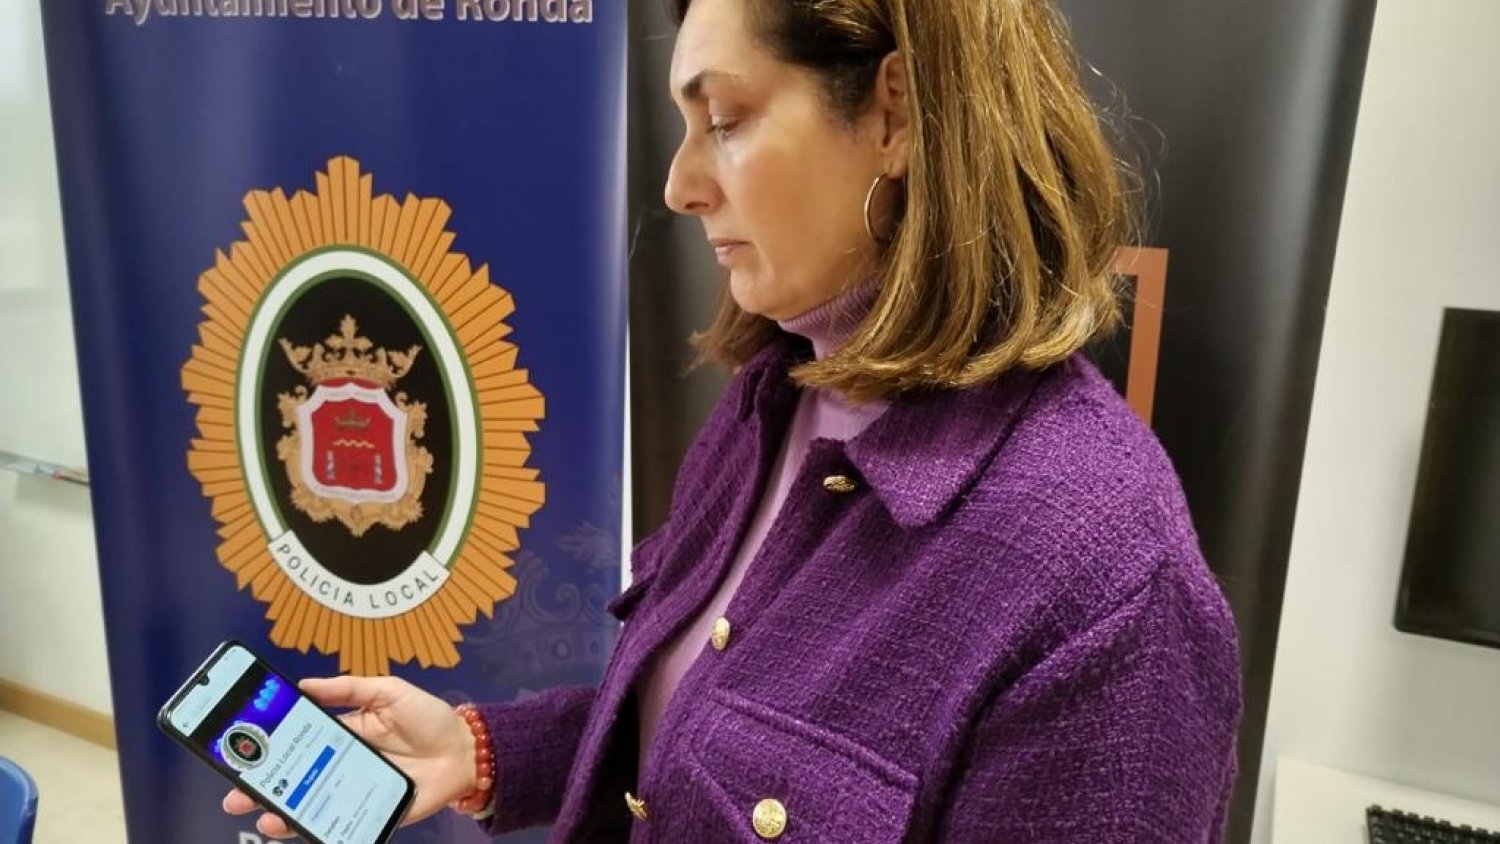 Ronda aumenta los canales de comunicación a través de un nuevo perfil de la Policía Local en Facebook